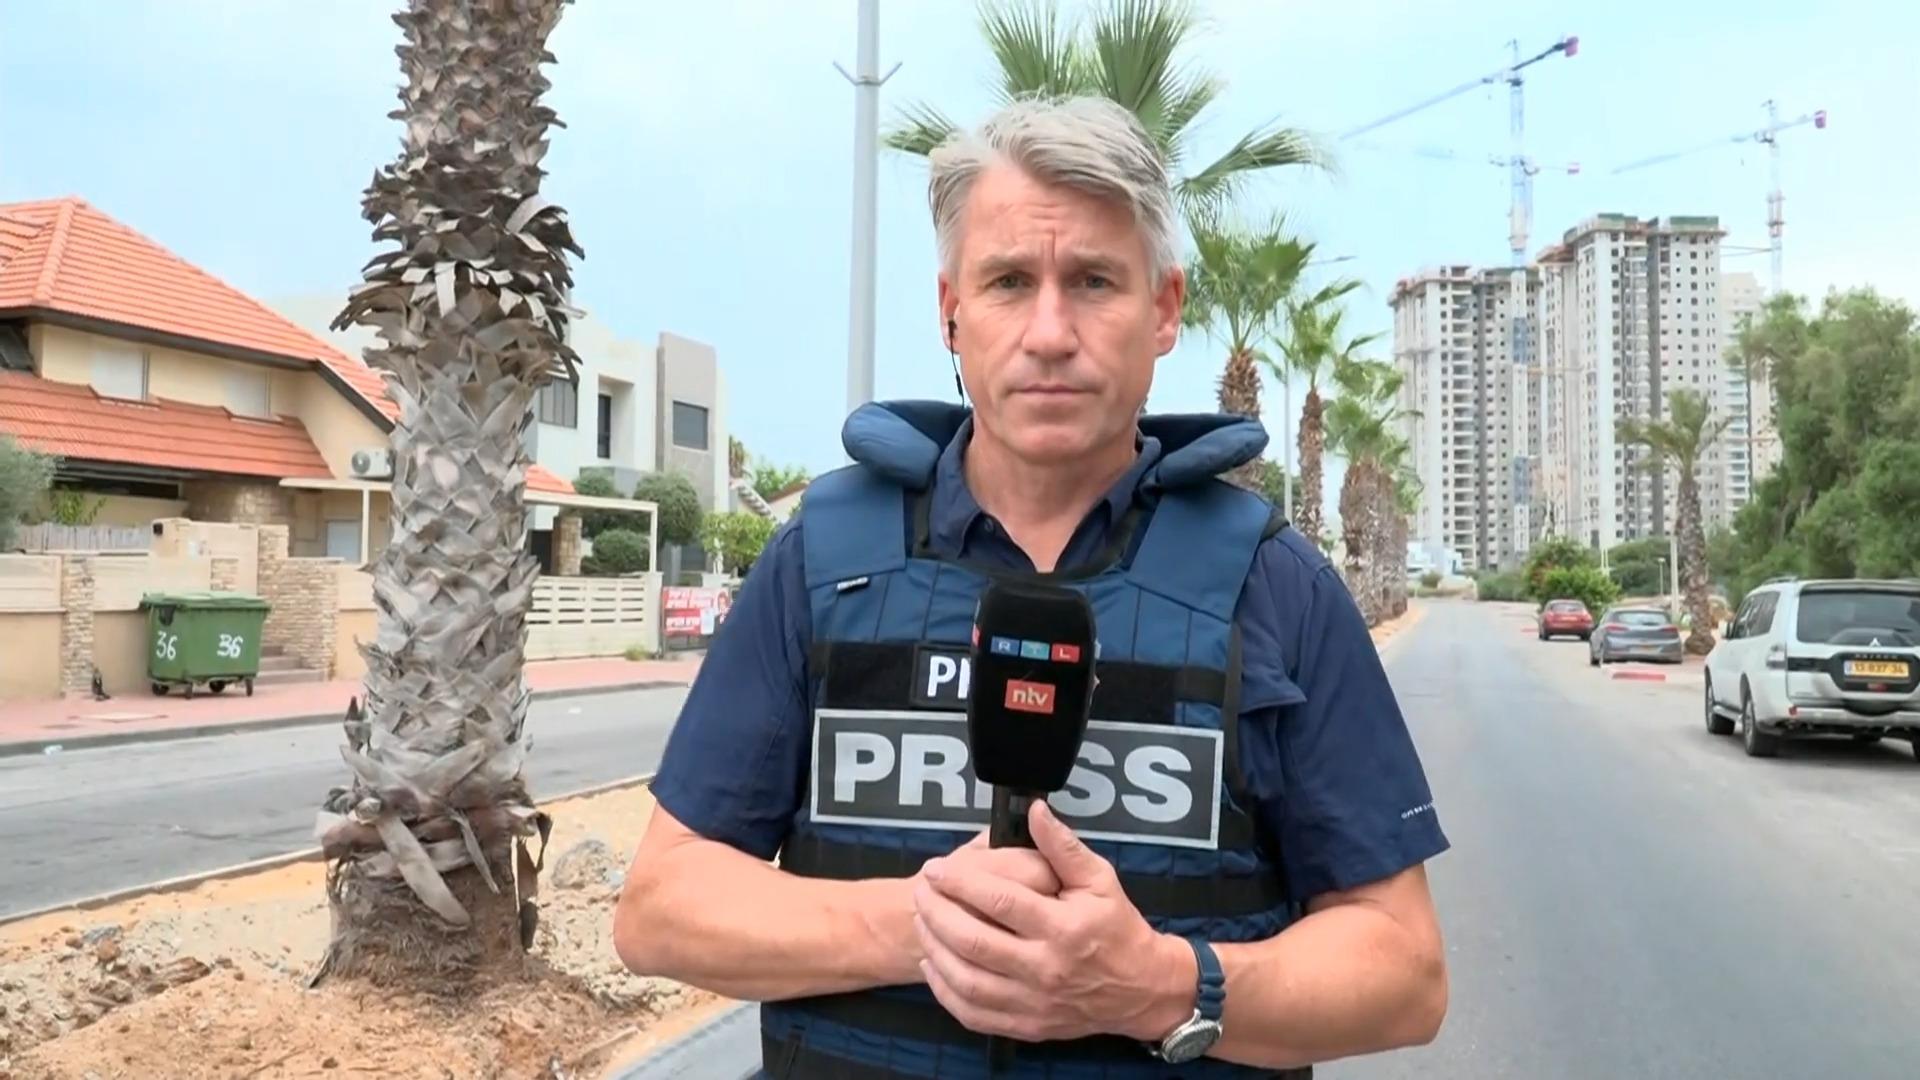 "Ungewissheit, was die Hamas mit Geiseln macht, belastet" Jürgen Weichert in Israel zu Geiselnahmen